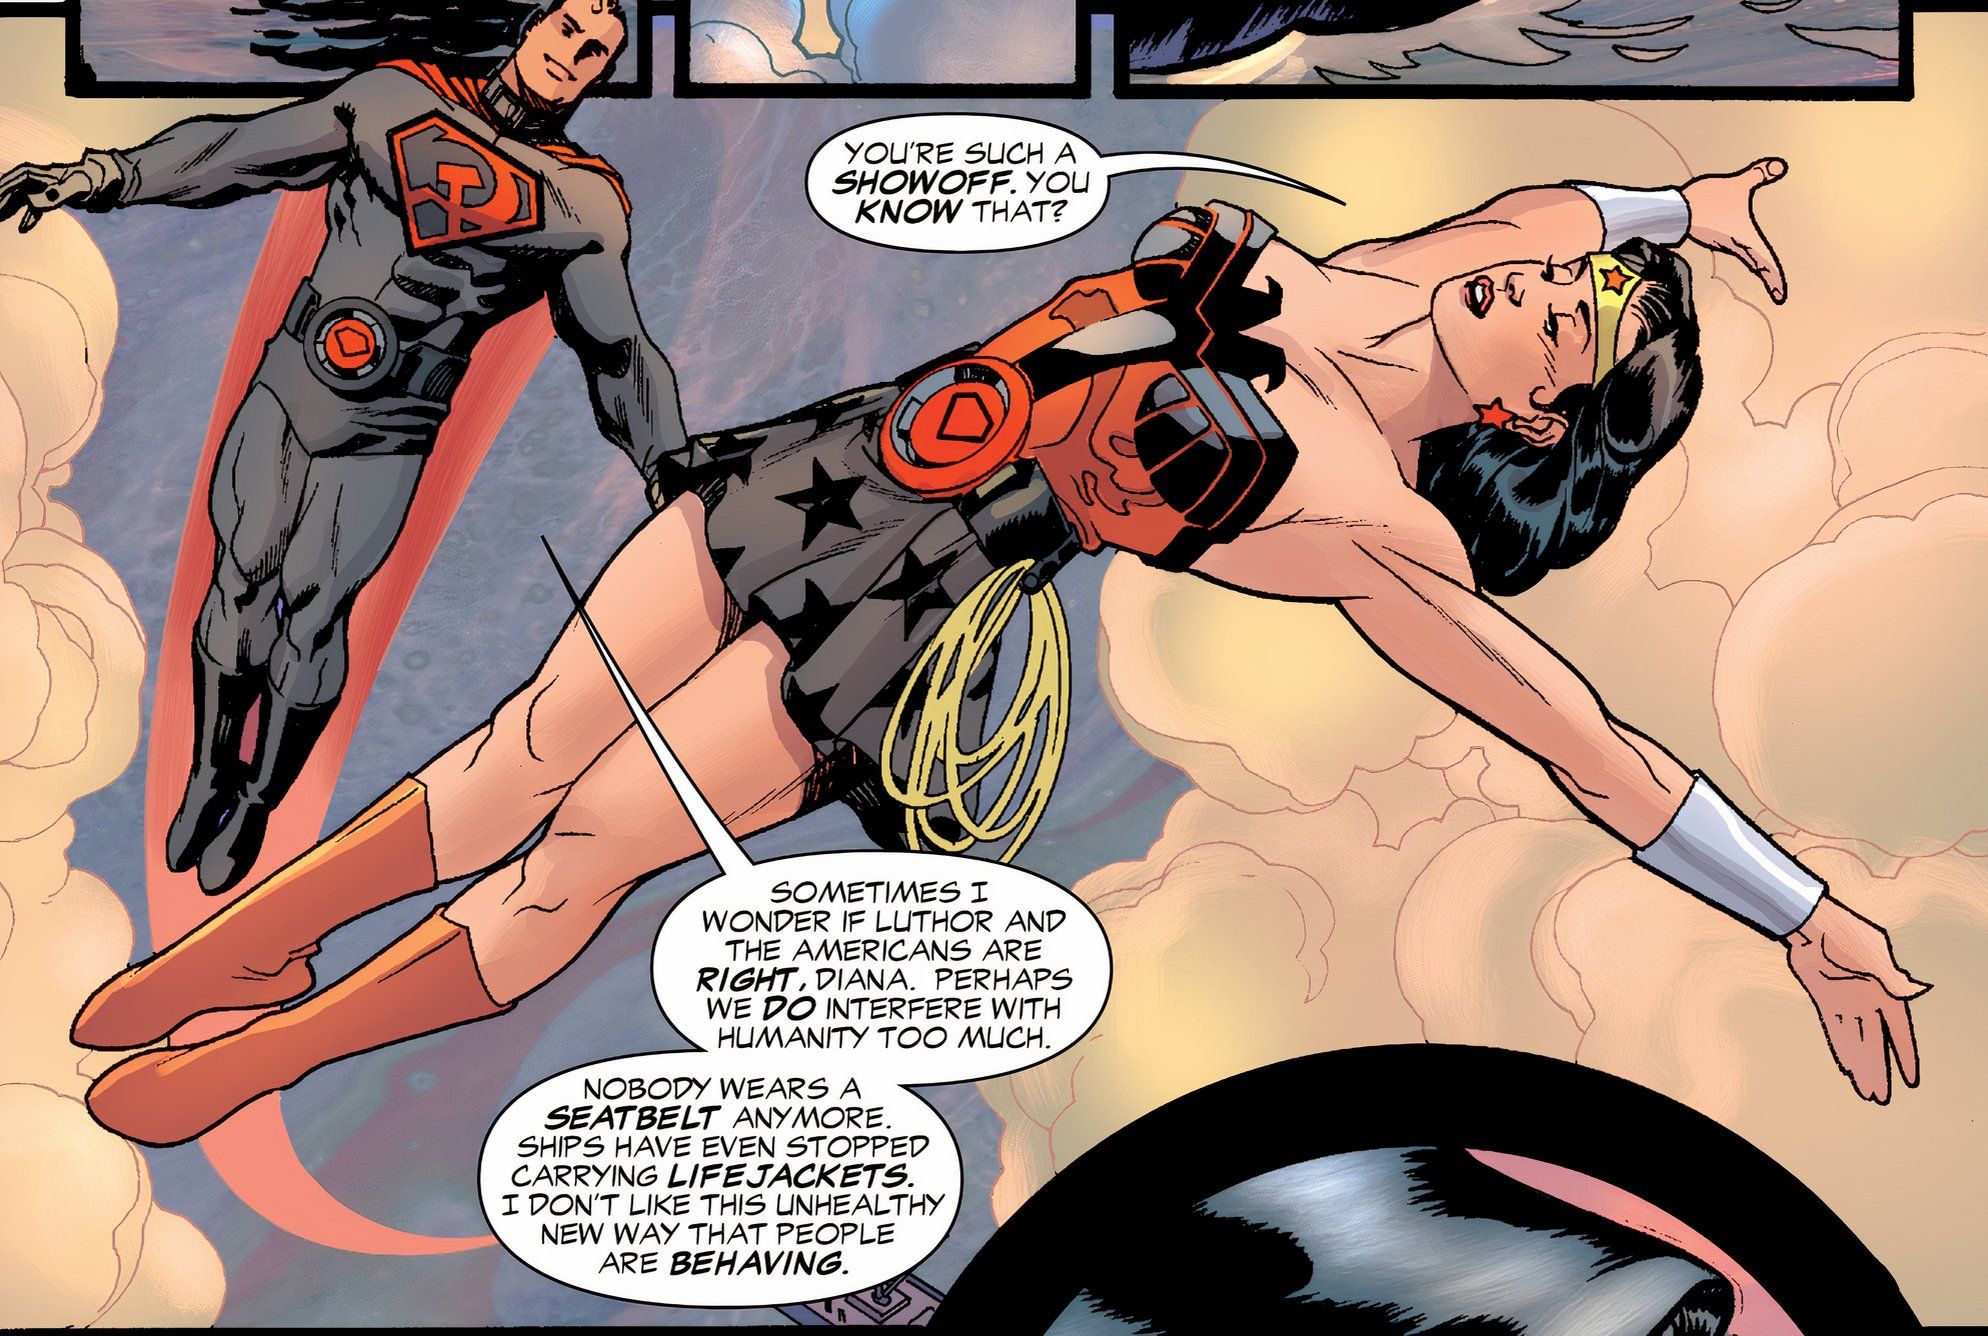 Mulher-Maravilha flutua no ar com Superman. Ambos estão usando vermelho e preto, estilo URSS, em seus trajes tradicionais.